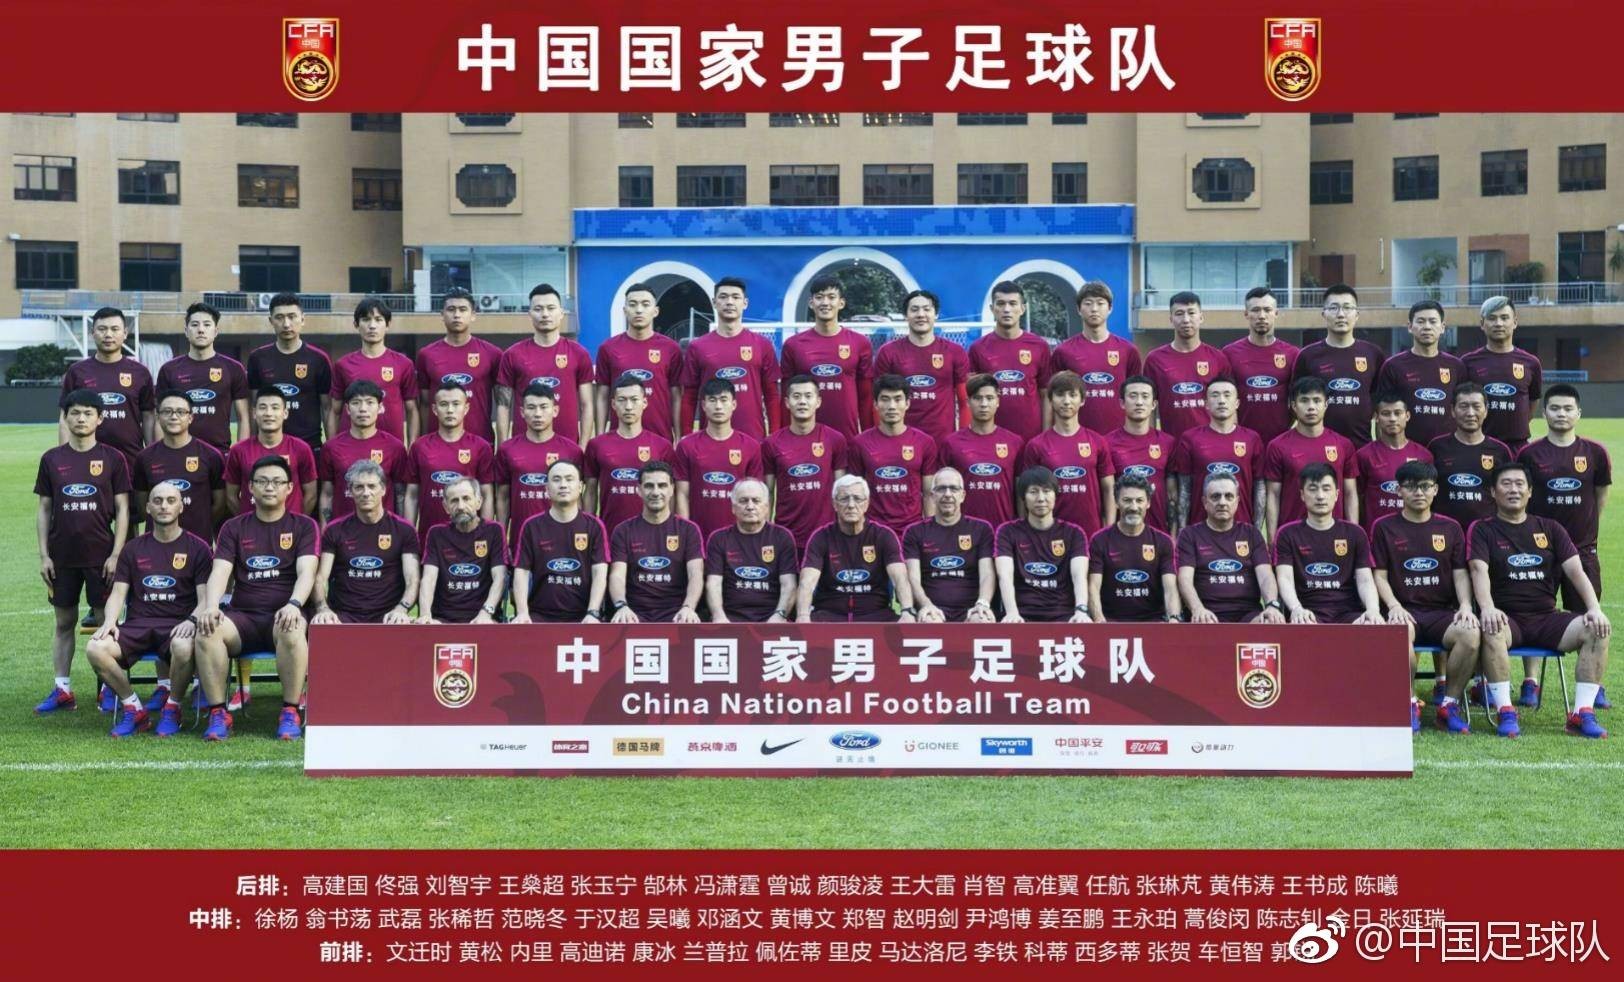 北京时间2017年6月6日，中国足球队官方微博发布了中国男足国家队最新一期的全家福照片，本次入选大名单的球员均在列。